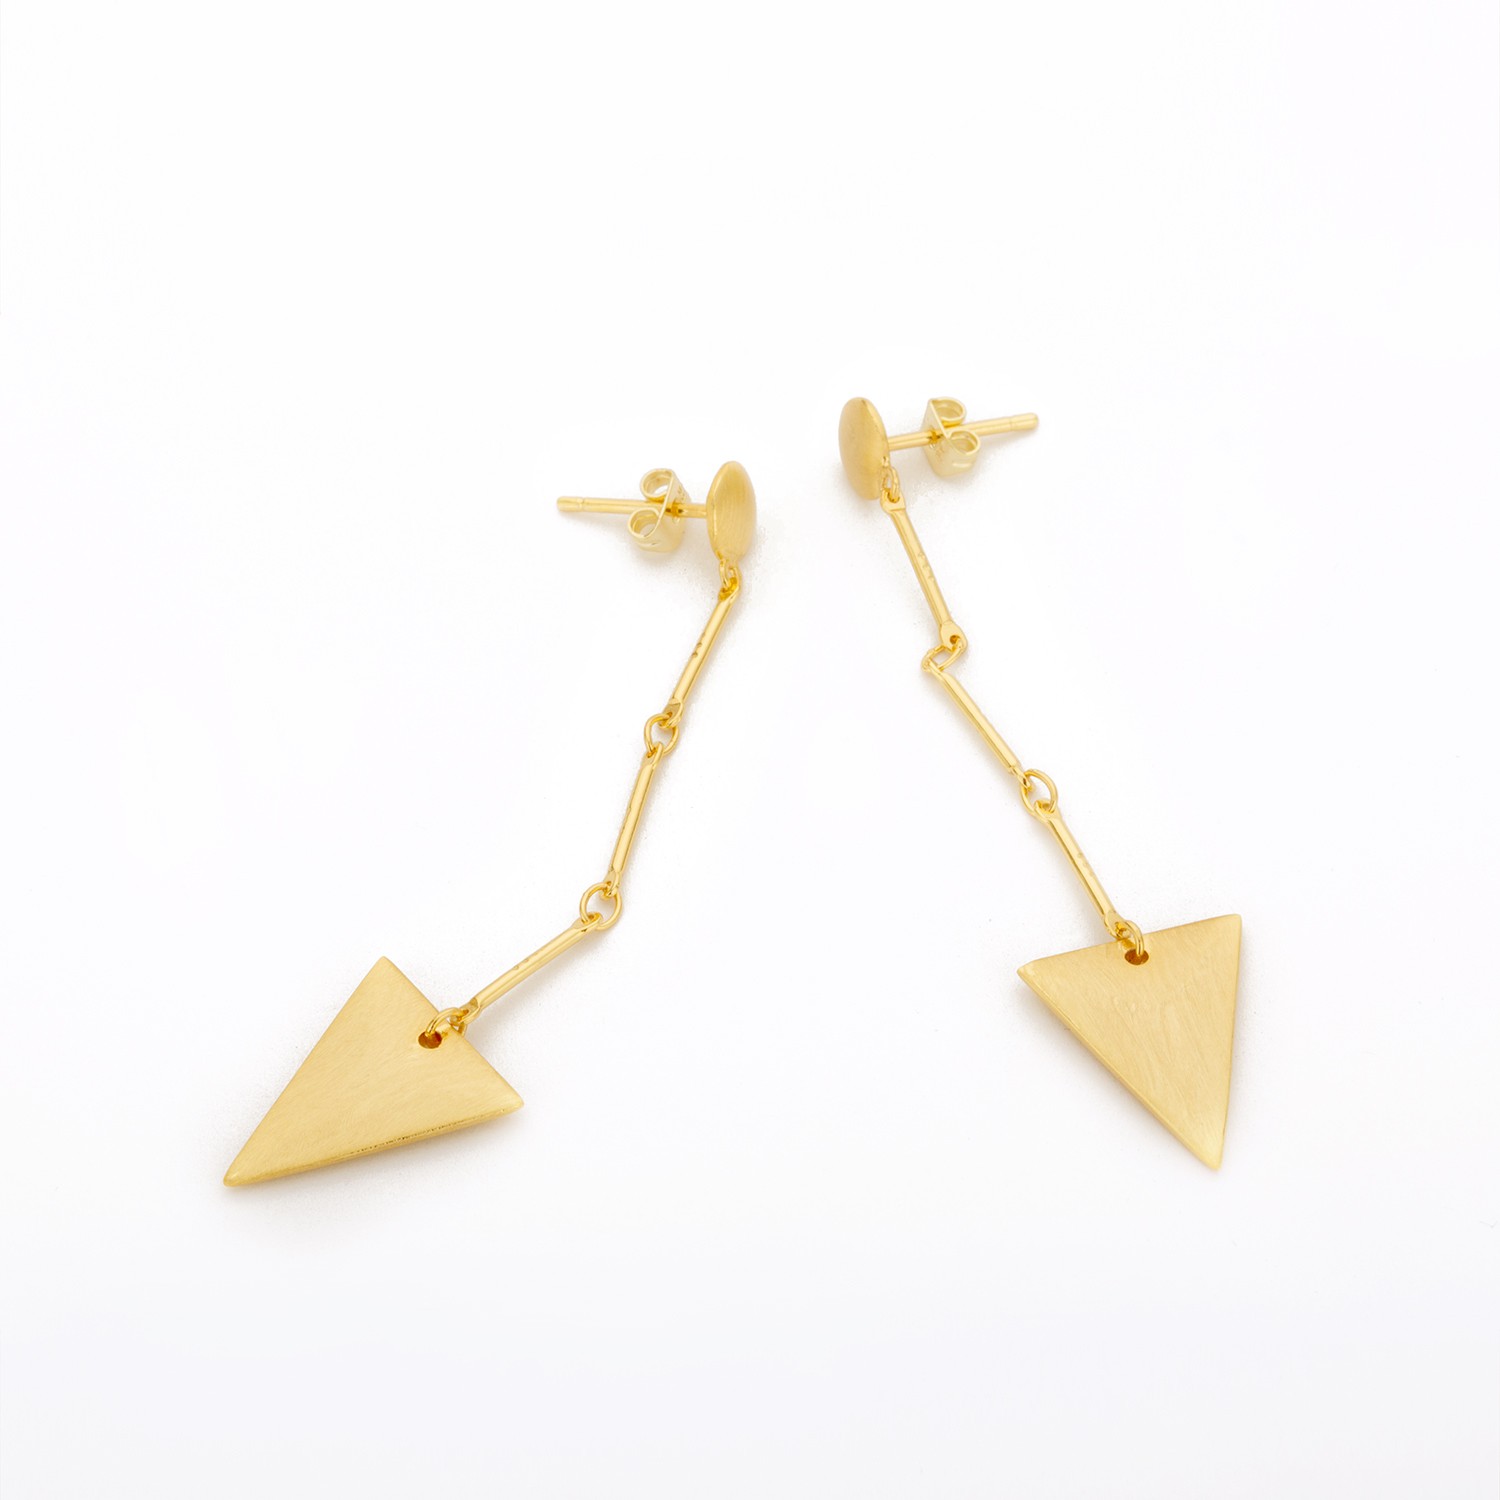 Wholesale Manufacturer Jewelry Women Brass Fashion Earrings 14K Gold Plated Triangle Long Drop Earri